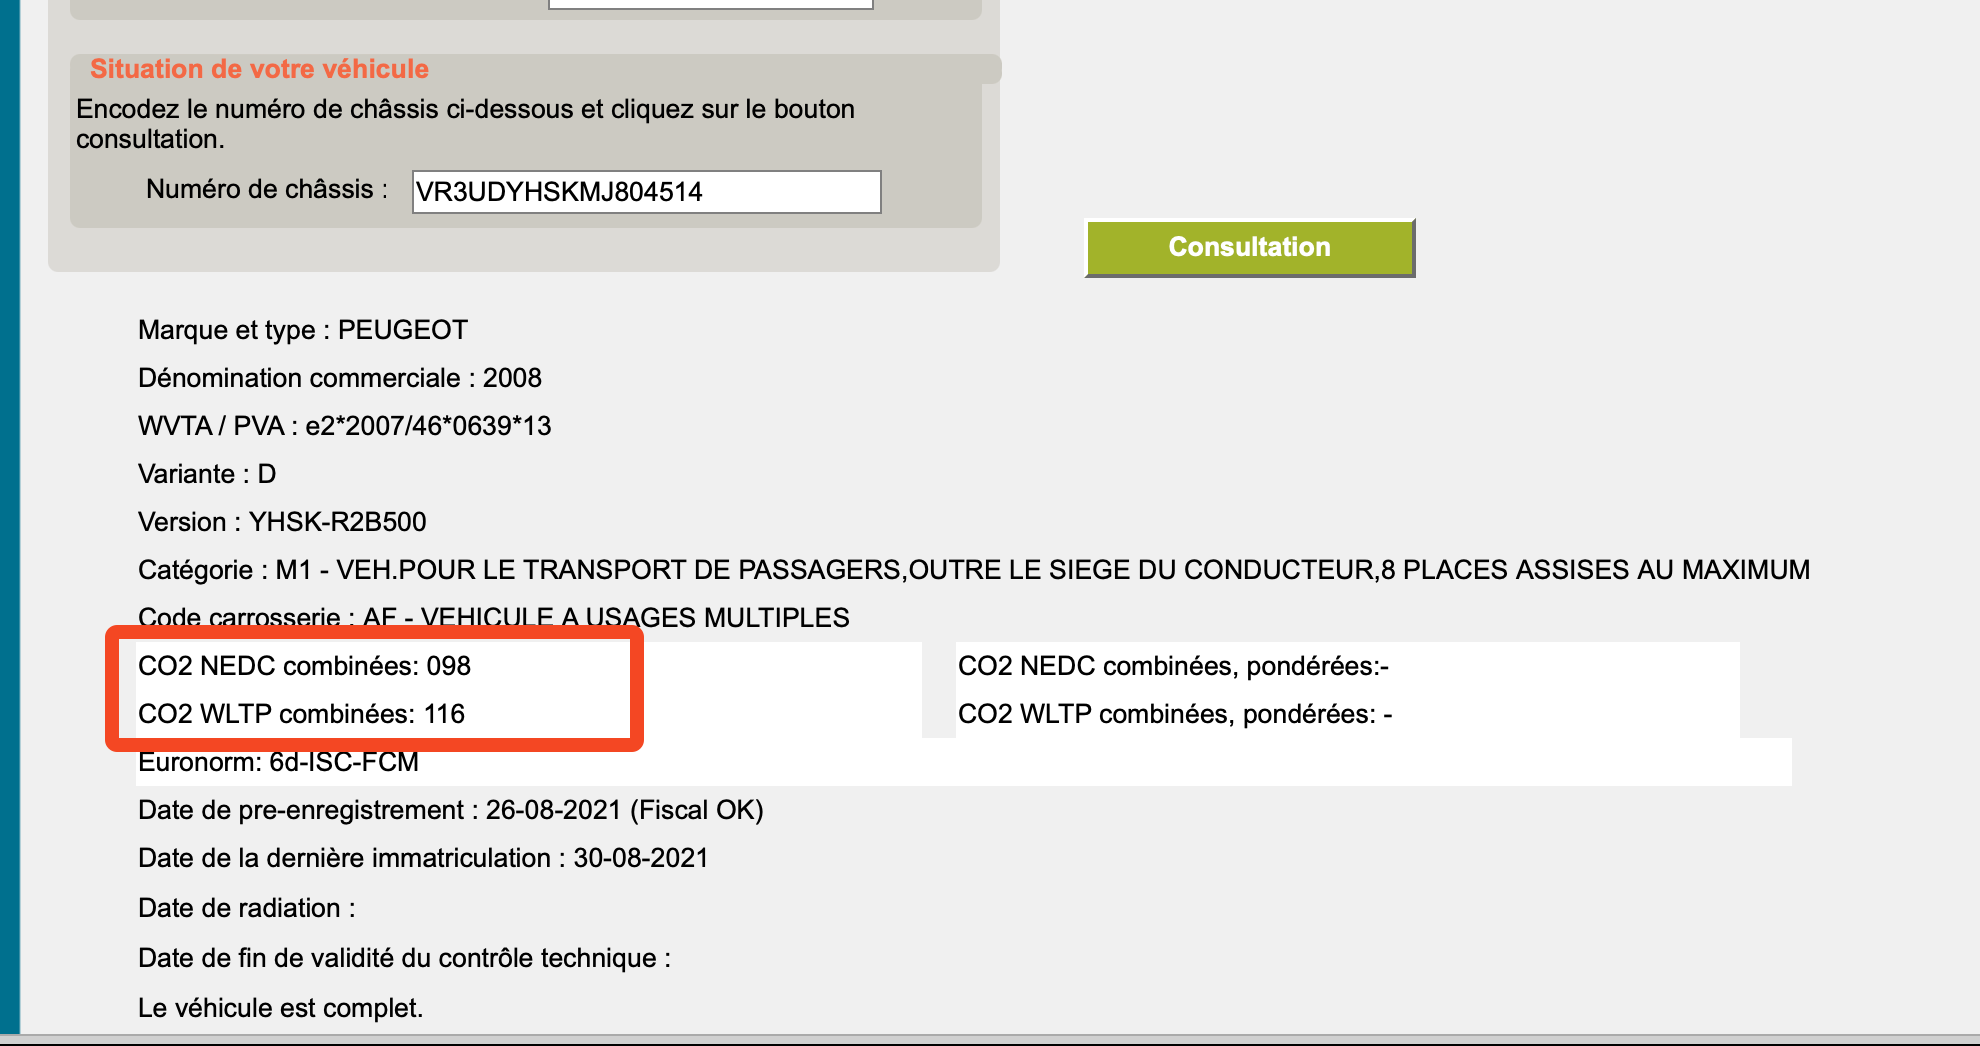 képernyőkép a belga rendszerleíró adatbázisból, amely a nedc és a wltp értékeket mutatja